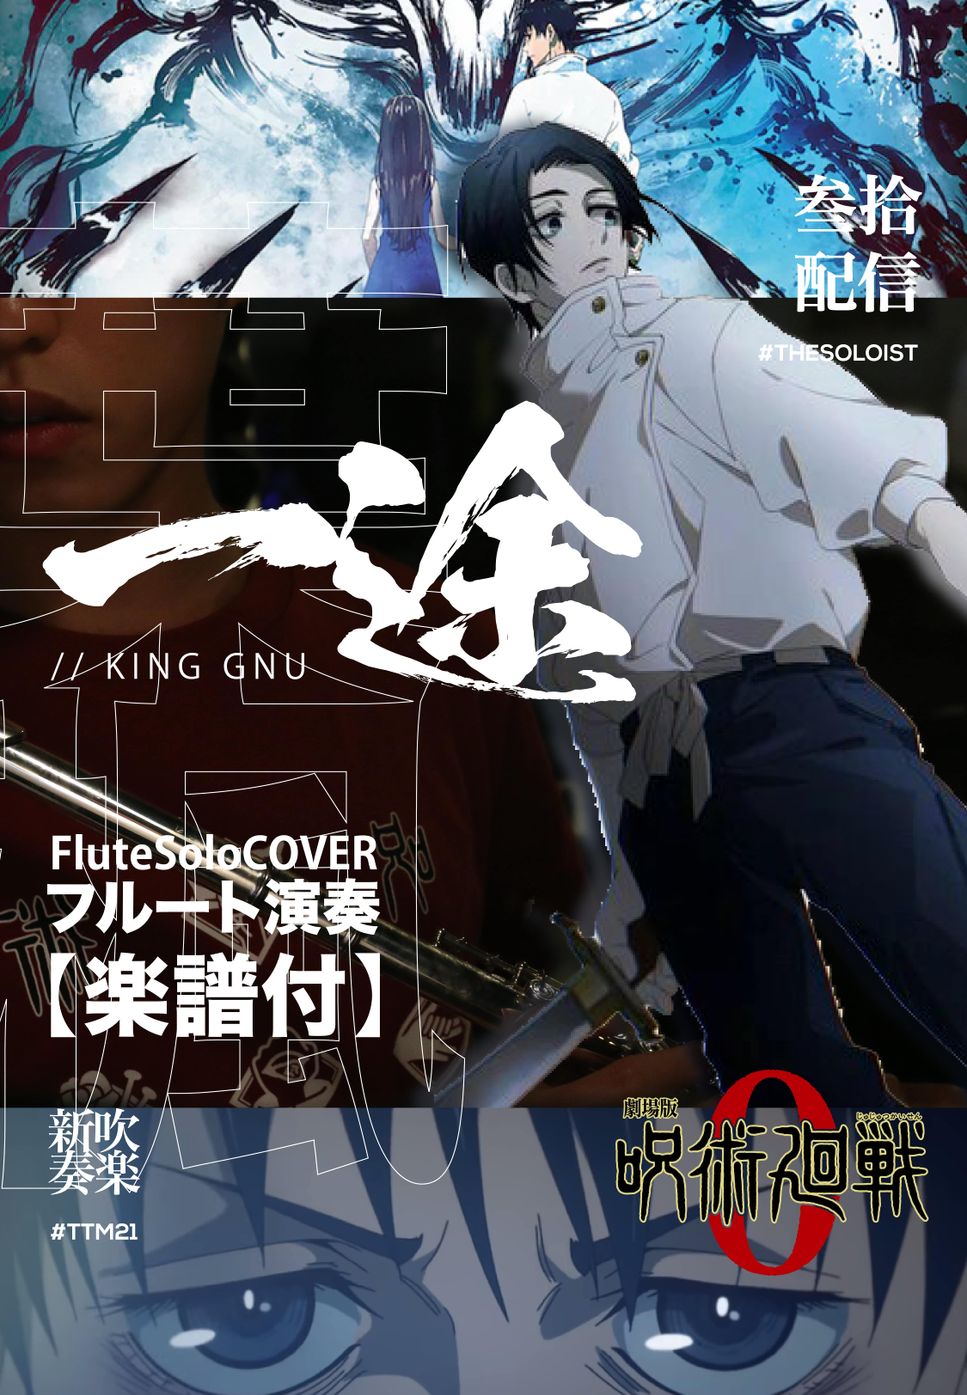 劇場版 呪術廻戦 0 / Jujutsu Kaisen 0 the movie - 一途/KingGnu (長笛獨奏/FluteSolo) by FungYIP